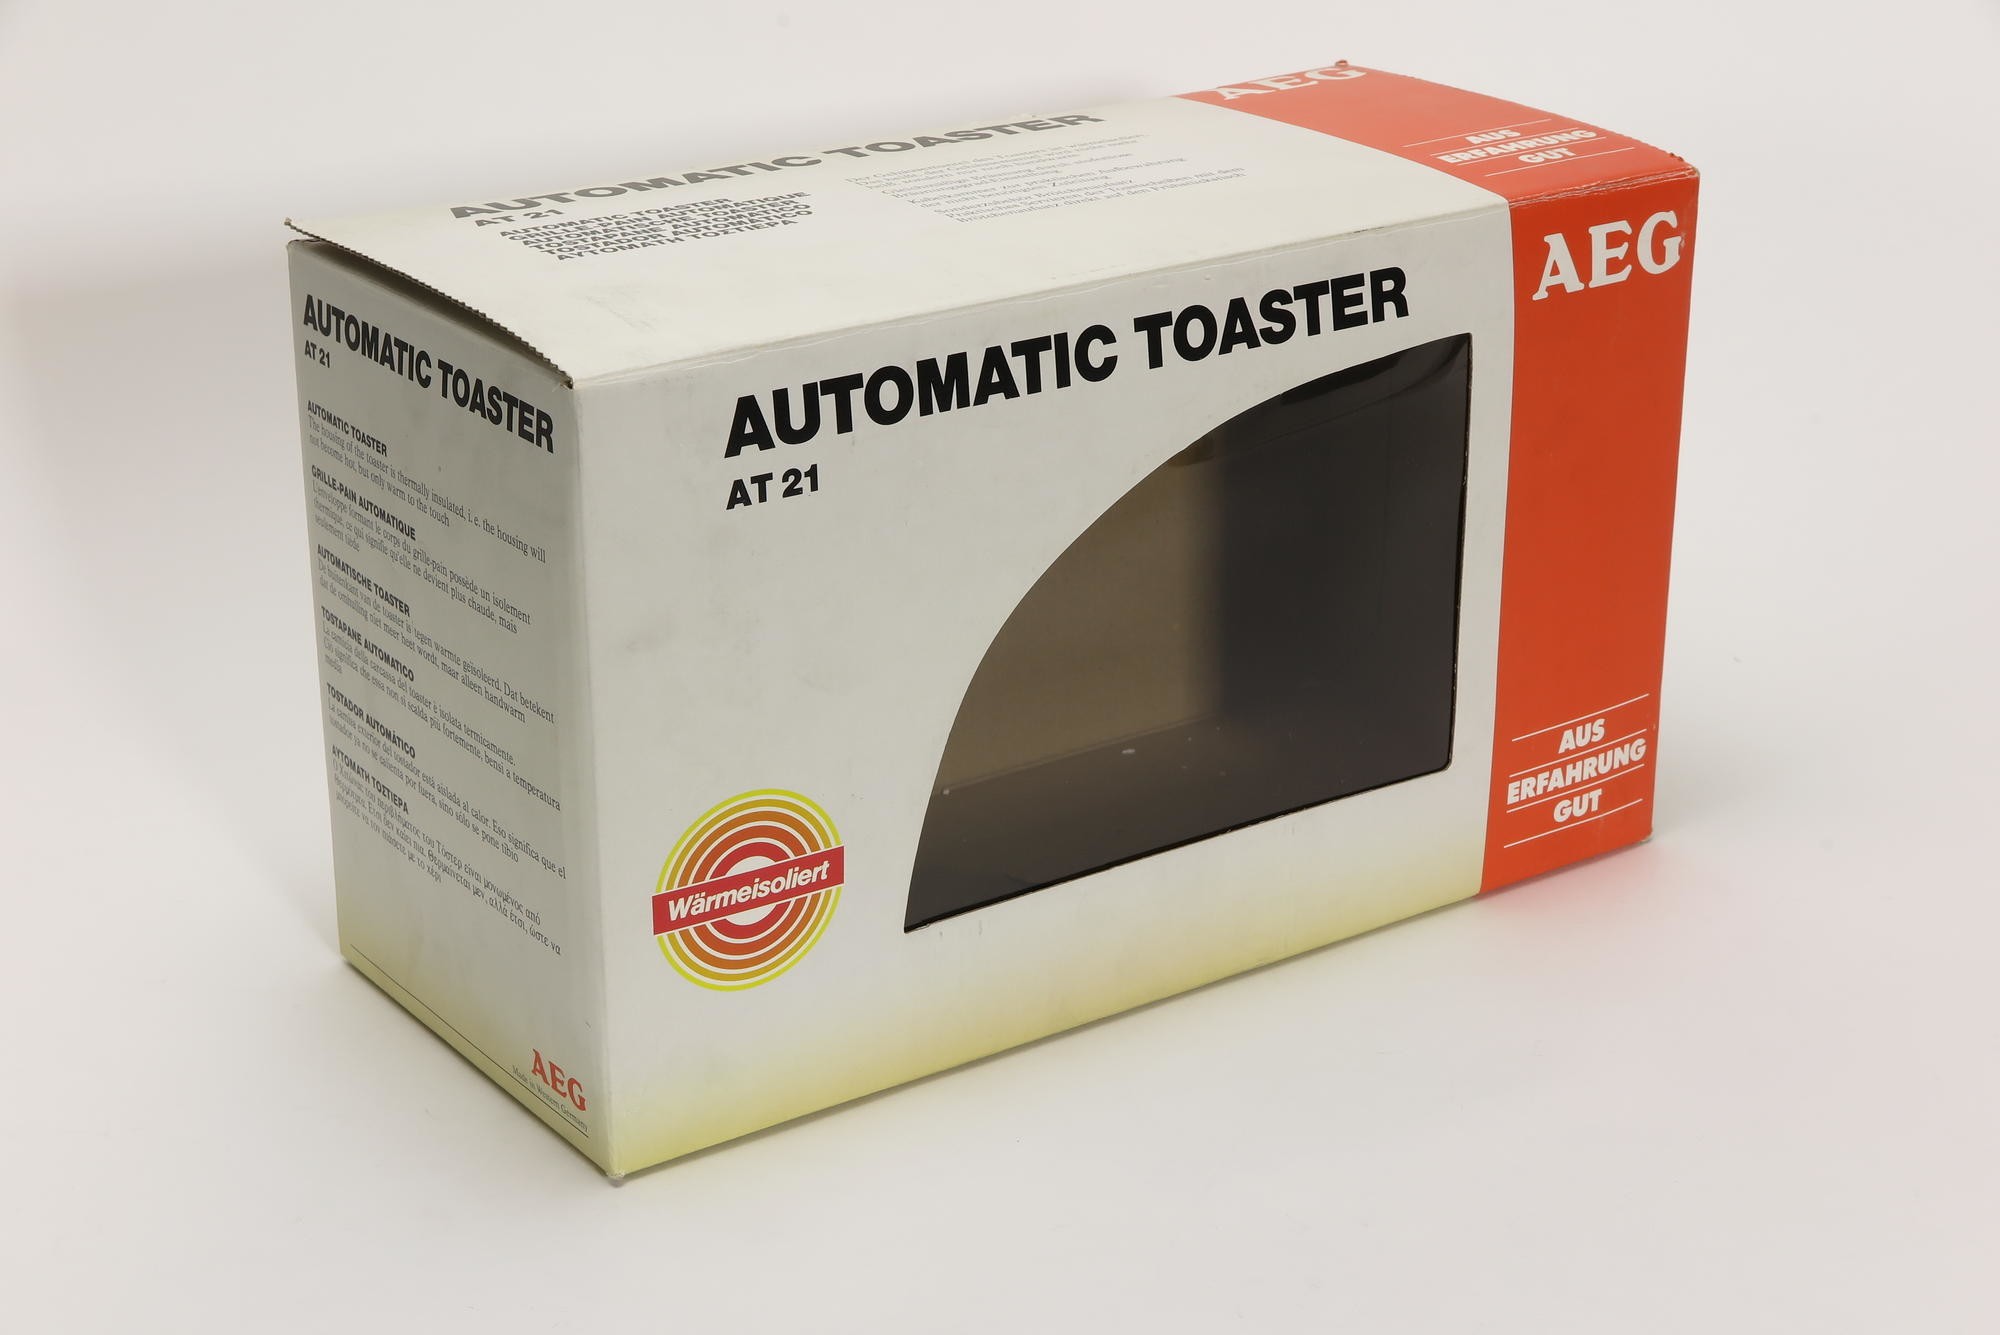 Verpackungskarton, Zubehör zu Automatischer Toaster Typ E WK 0063 Modell AT 21 'automatic toaster' (Stiftung Deutsches Technikmuseum Berlin CC0)